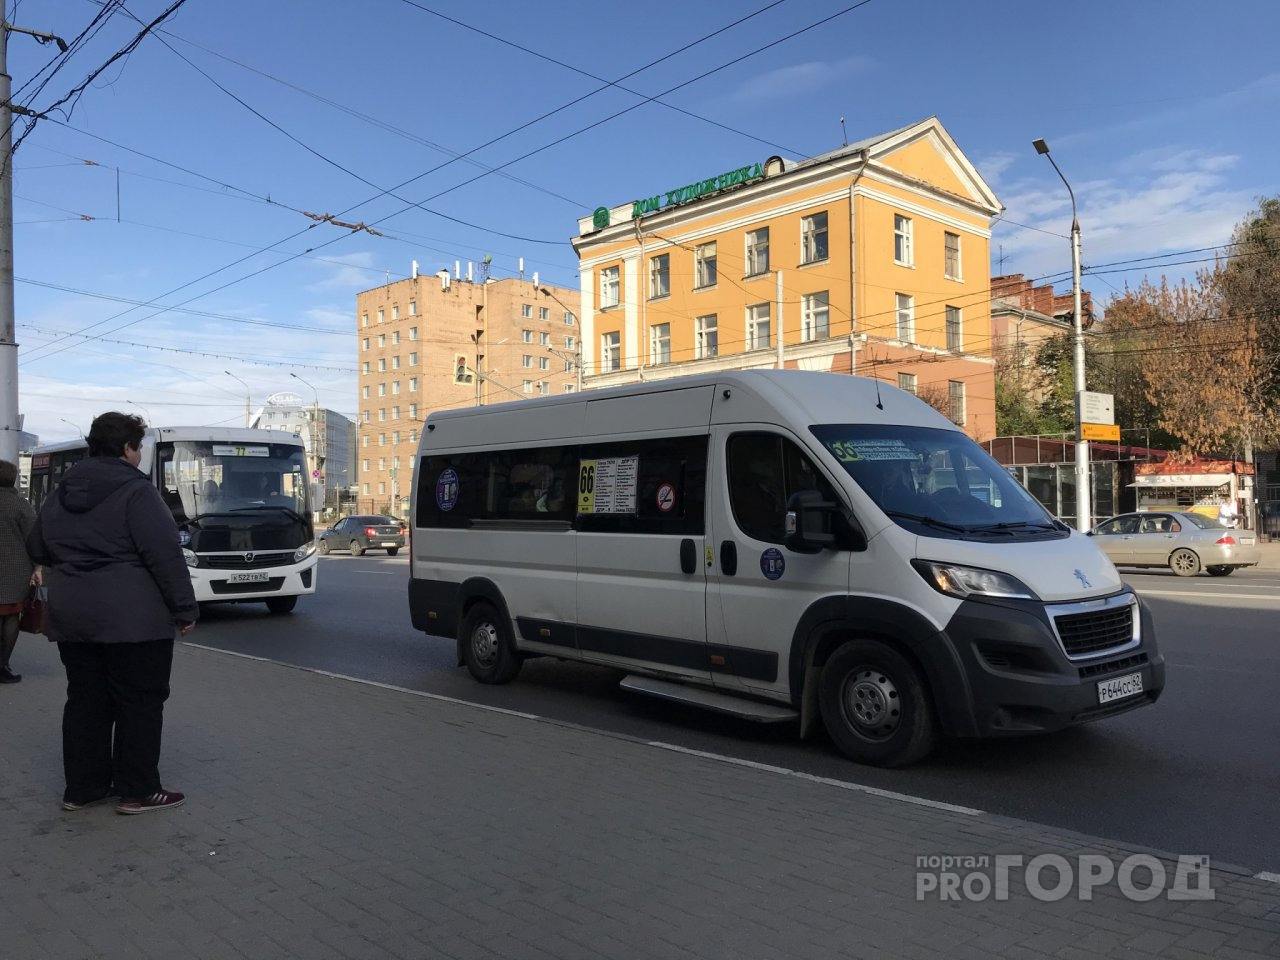 Кризис добрался и до рязанского транспорта: владелец 66 маршрутки рассказал о критической ситуации